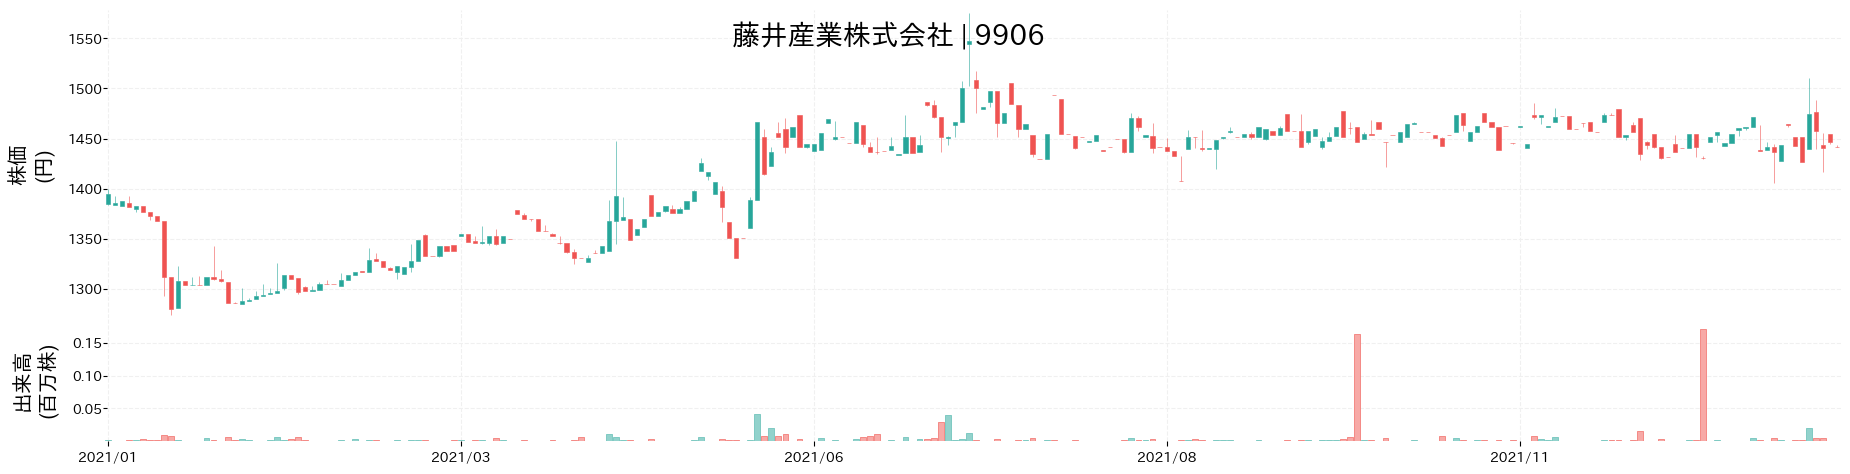 藤井産業の株価推移(2021)